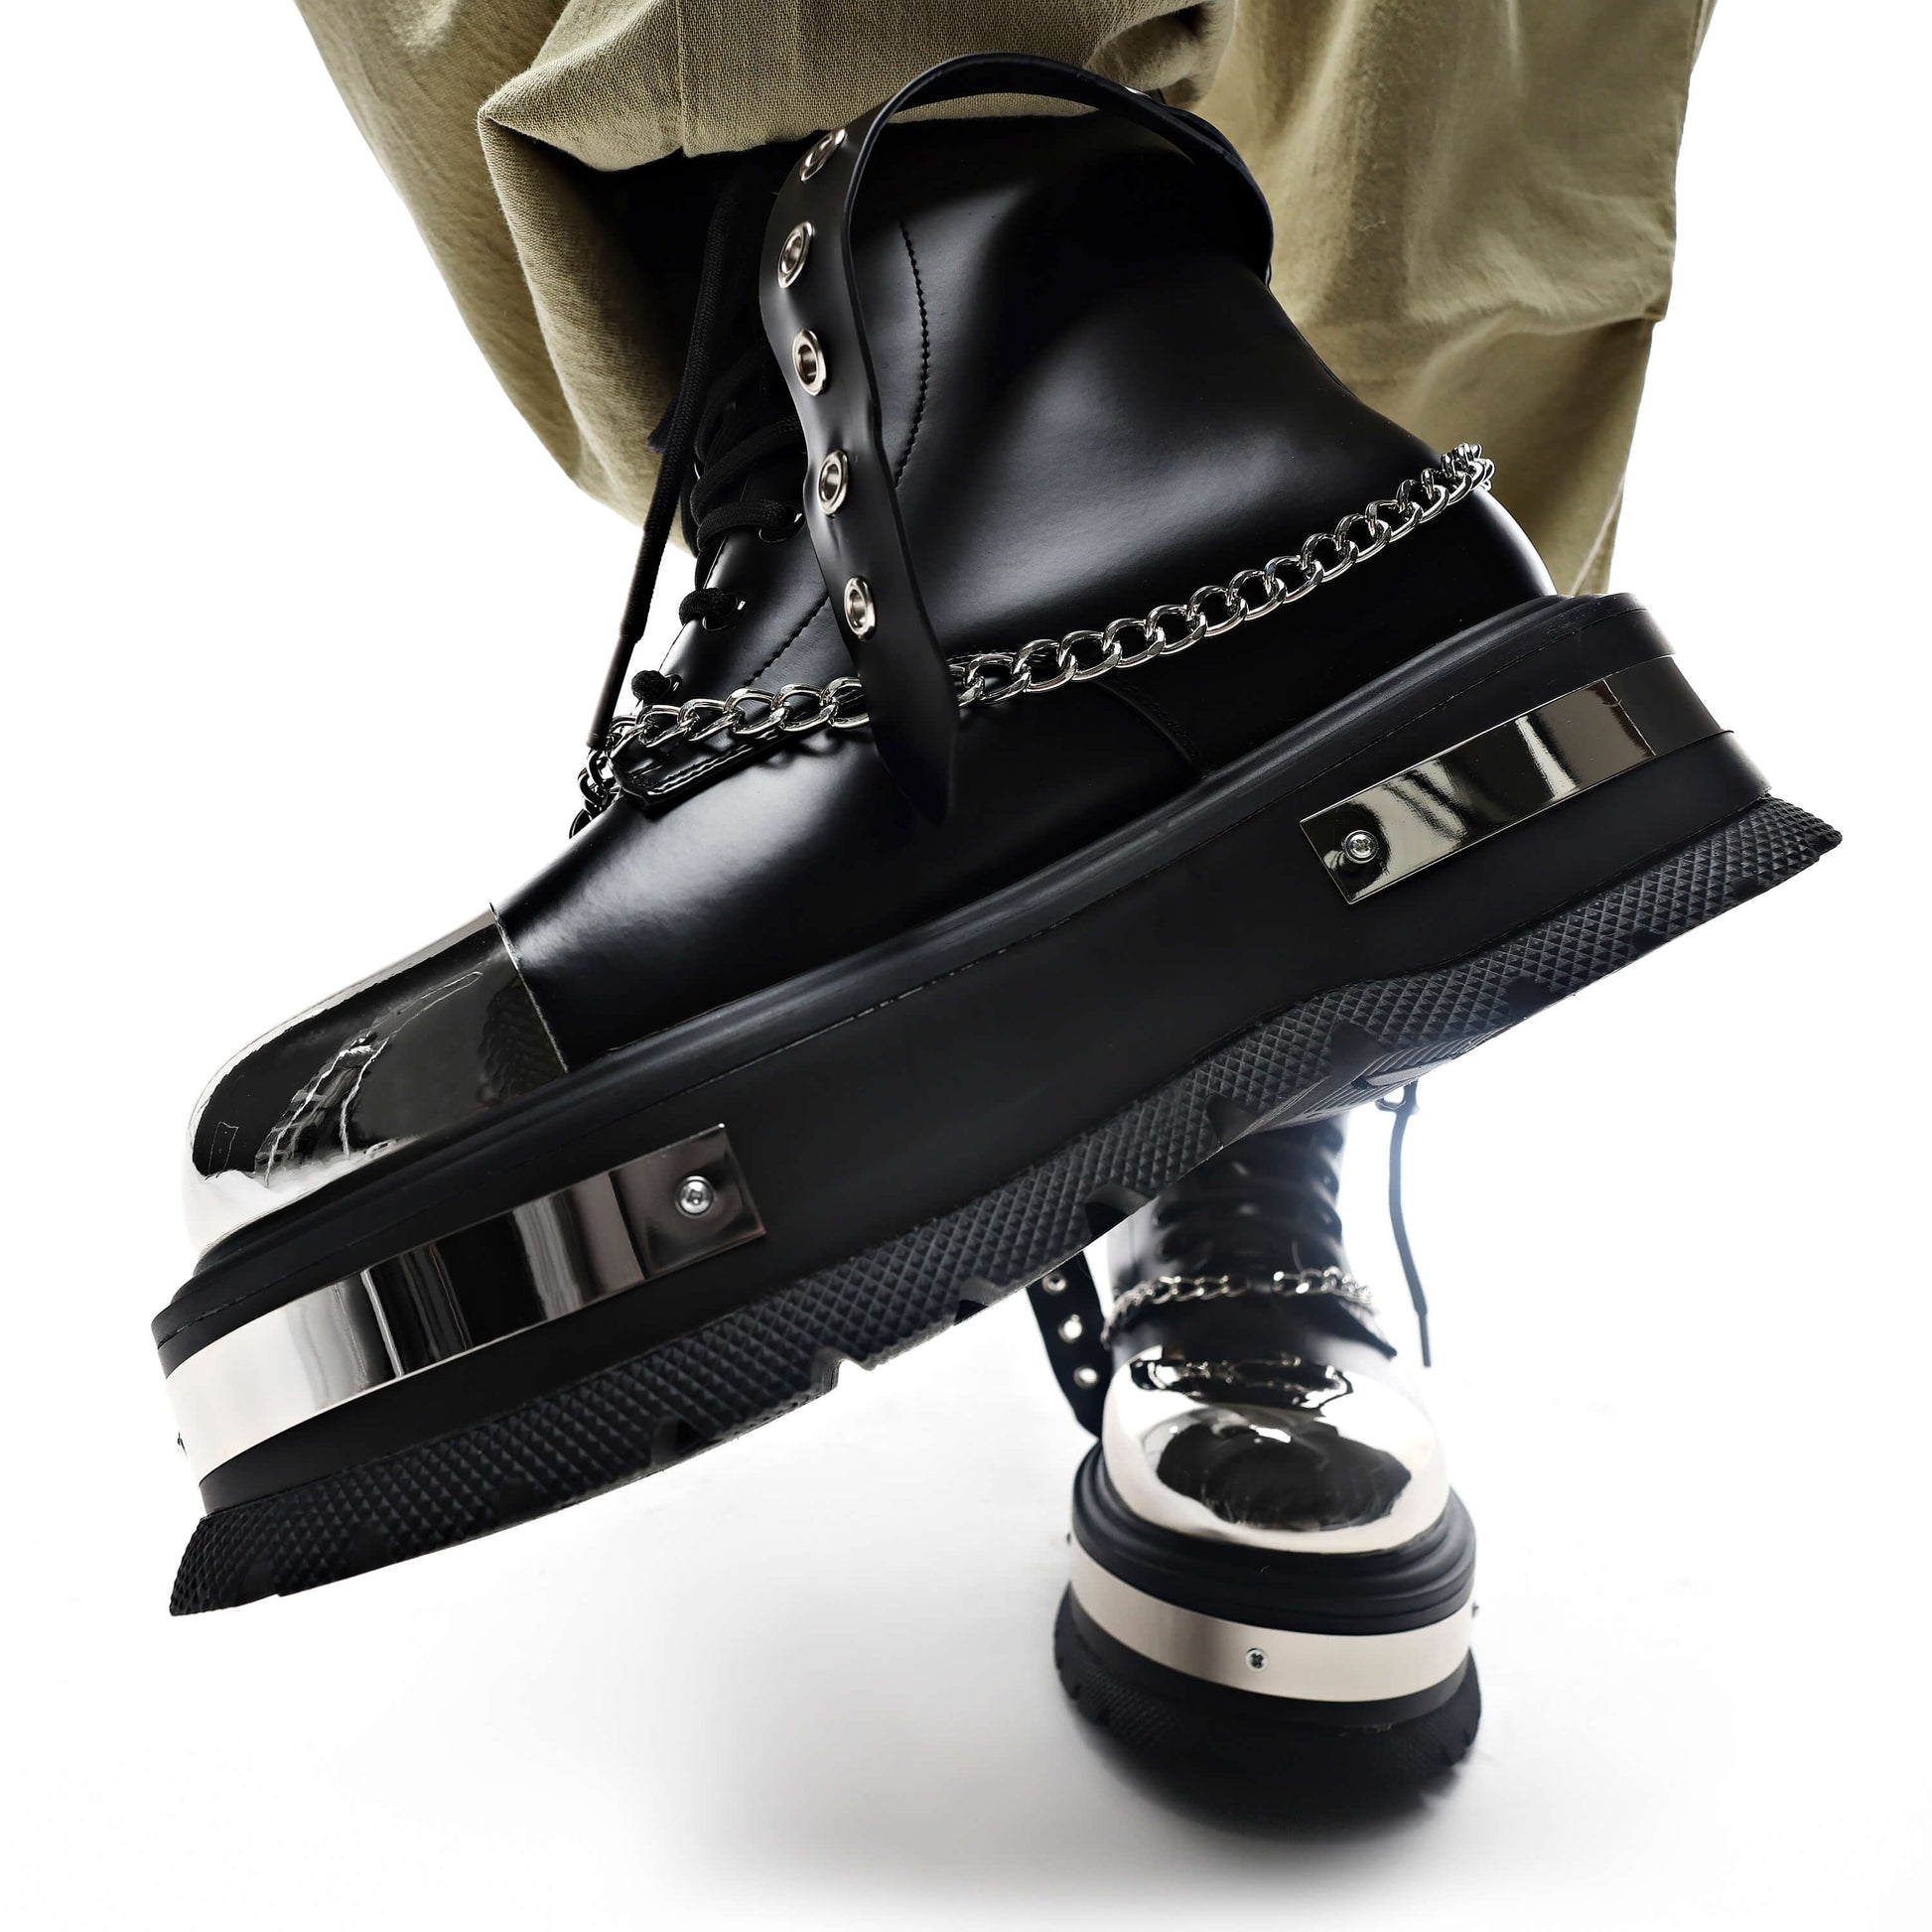 Borin Hardware Platform Boots - Ankle Boots - KOI Footwear - Black - Model Side Detail